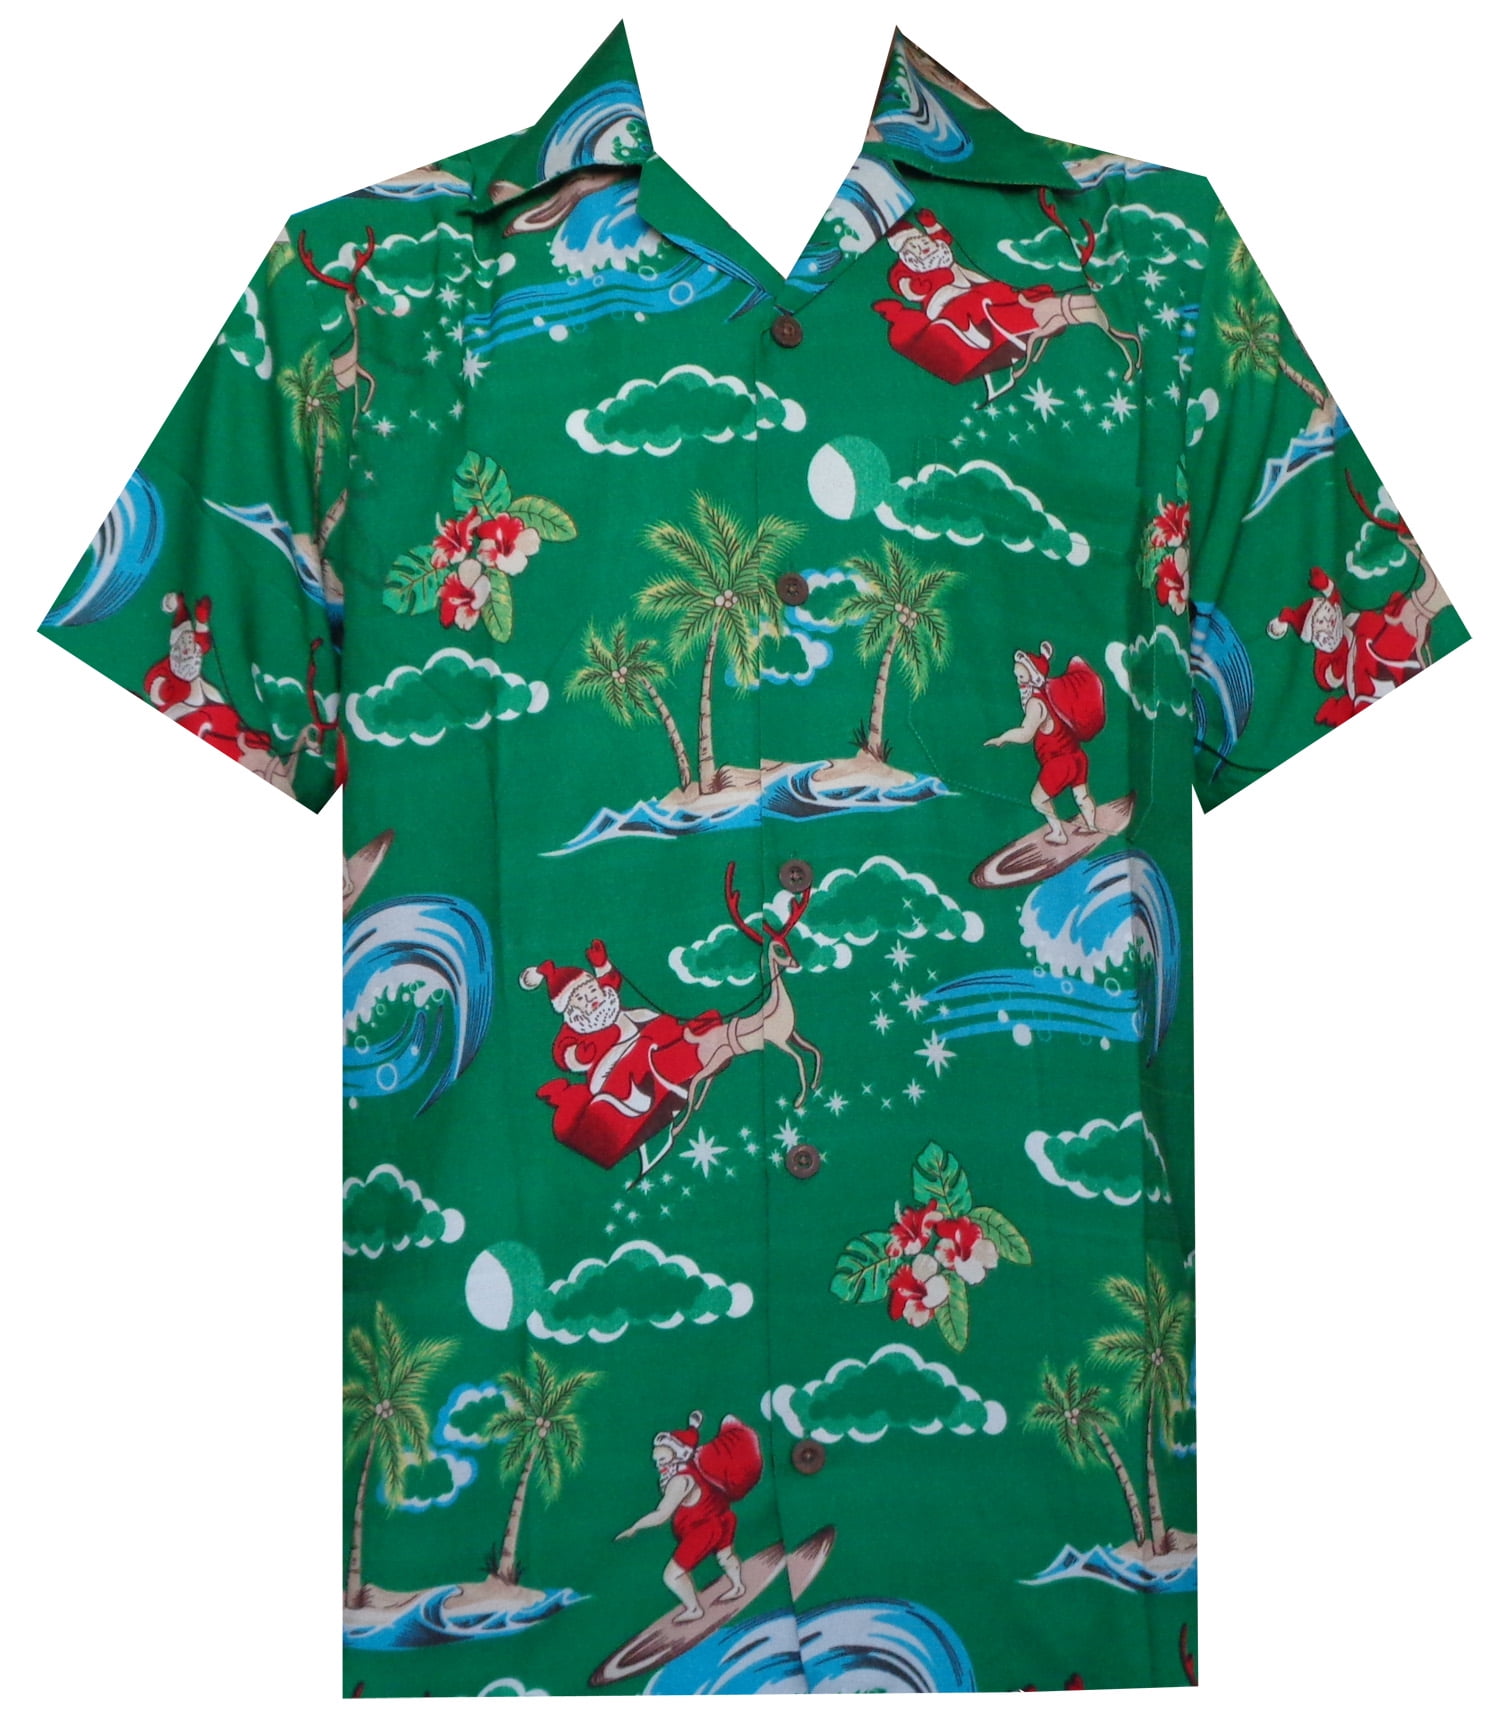 Alvish - Hawaiian Shirt 41 Mens Christmas Santa Claus Party Aloha ...